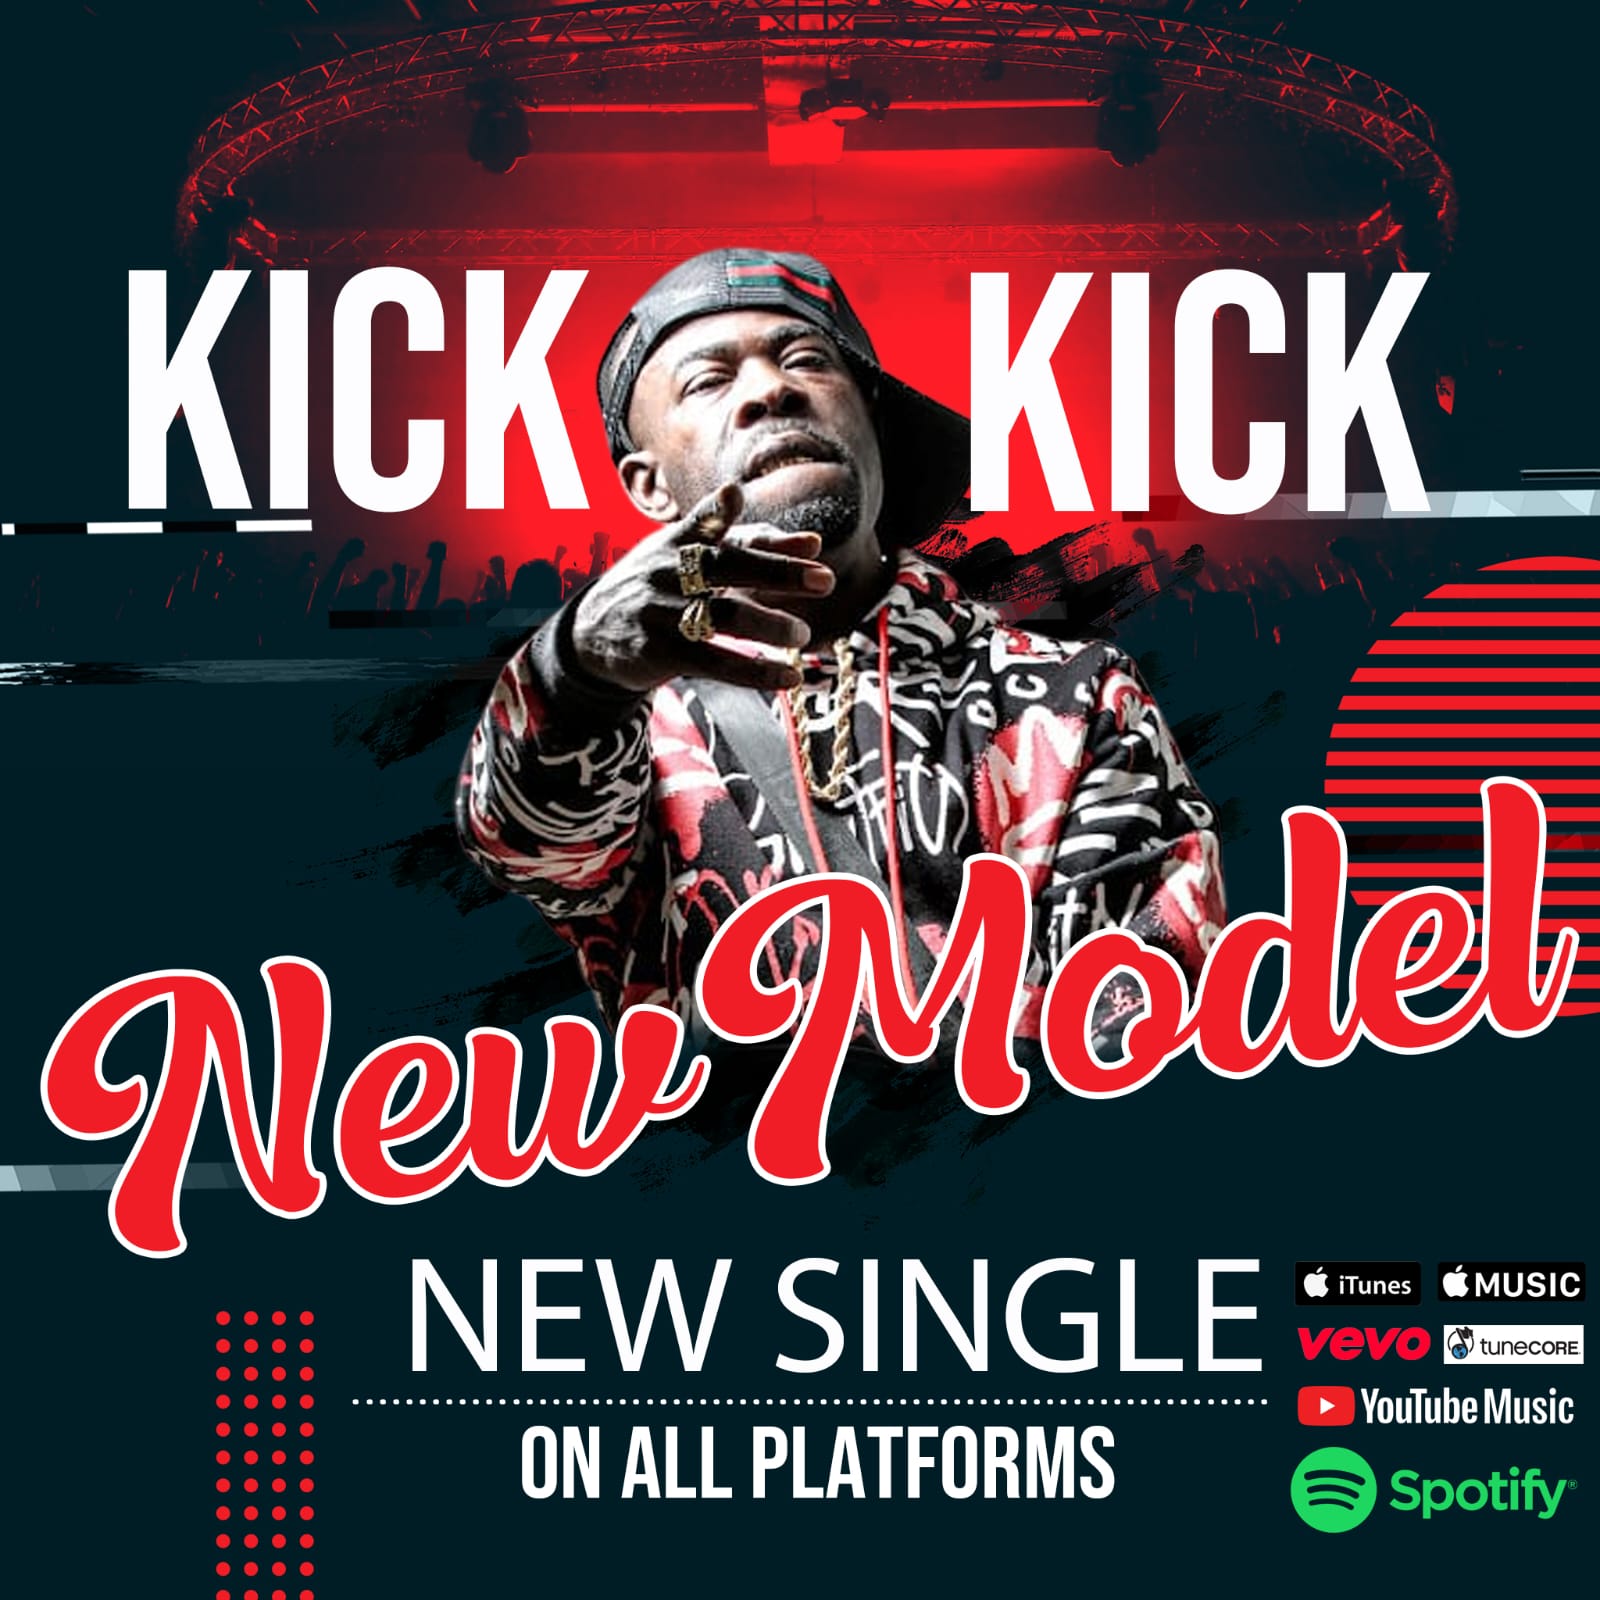 Kick_kick – New Model ft DjGspot | New Video